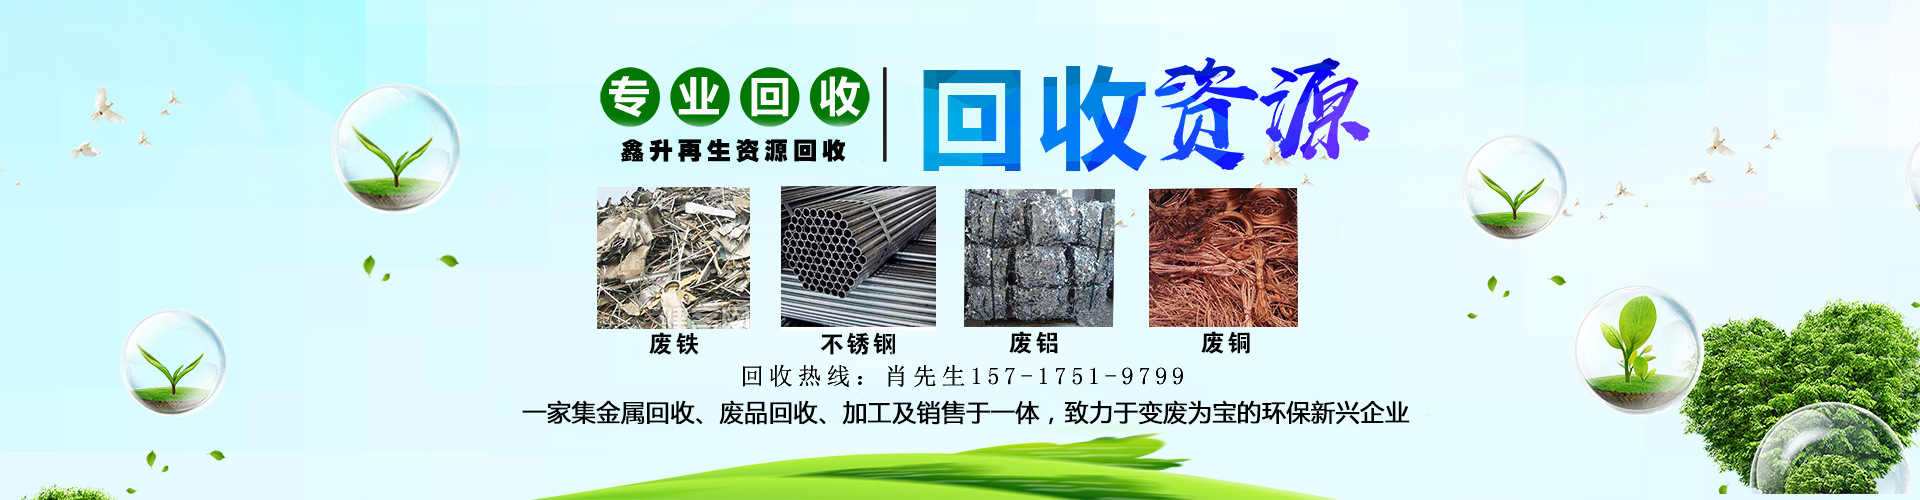 長(cháng)沙廢銅回收